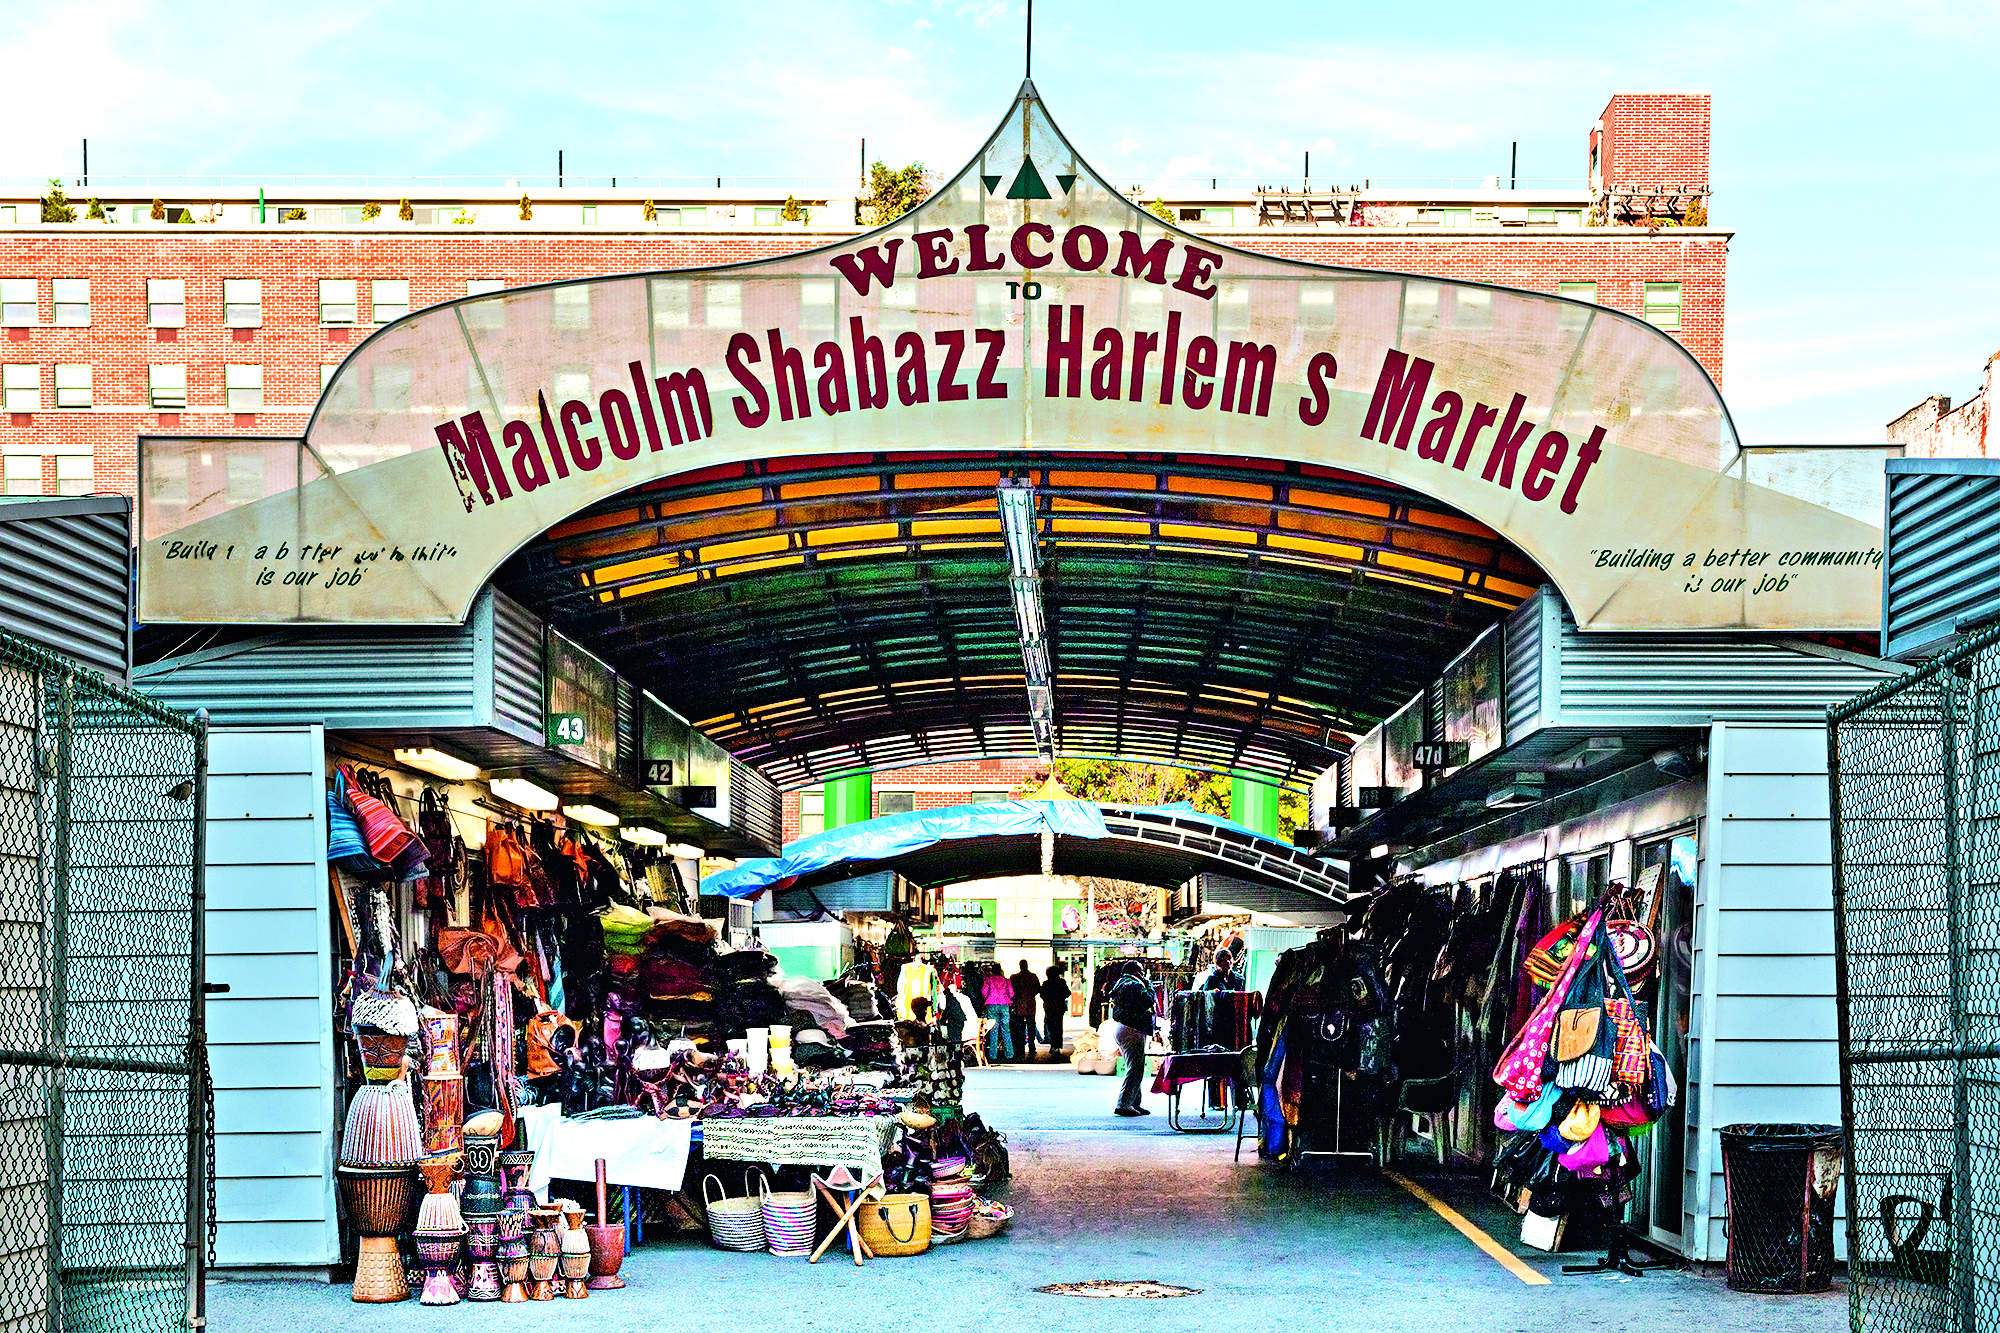 Malcolm Shabazz Harlem Market, Manhattan, New York City